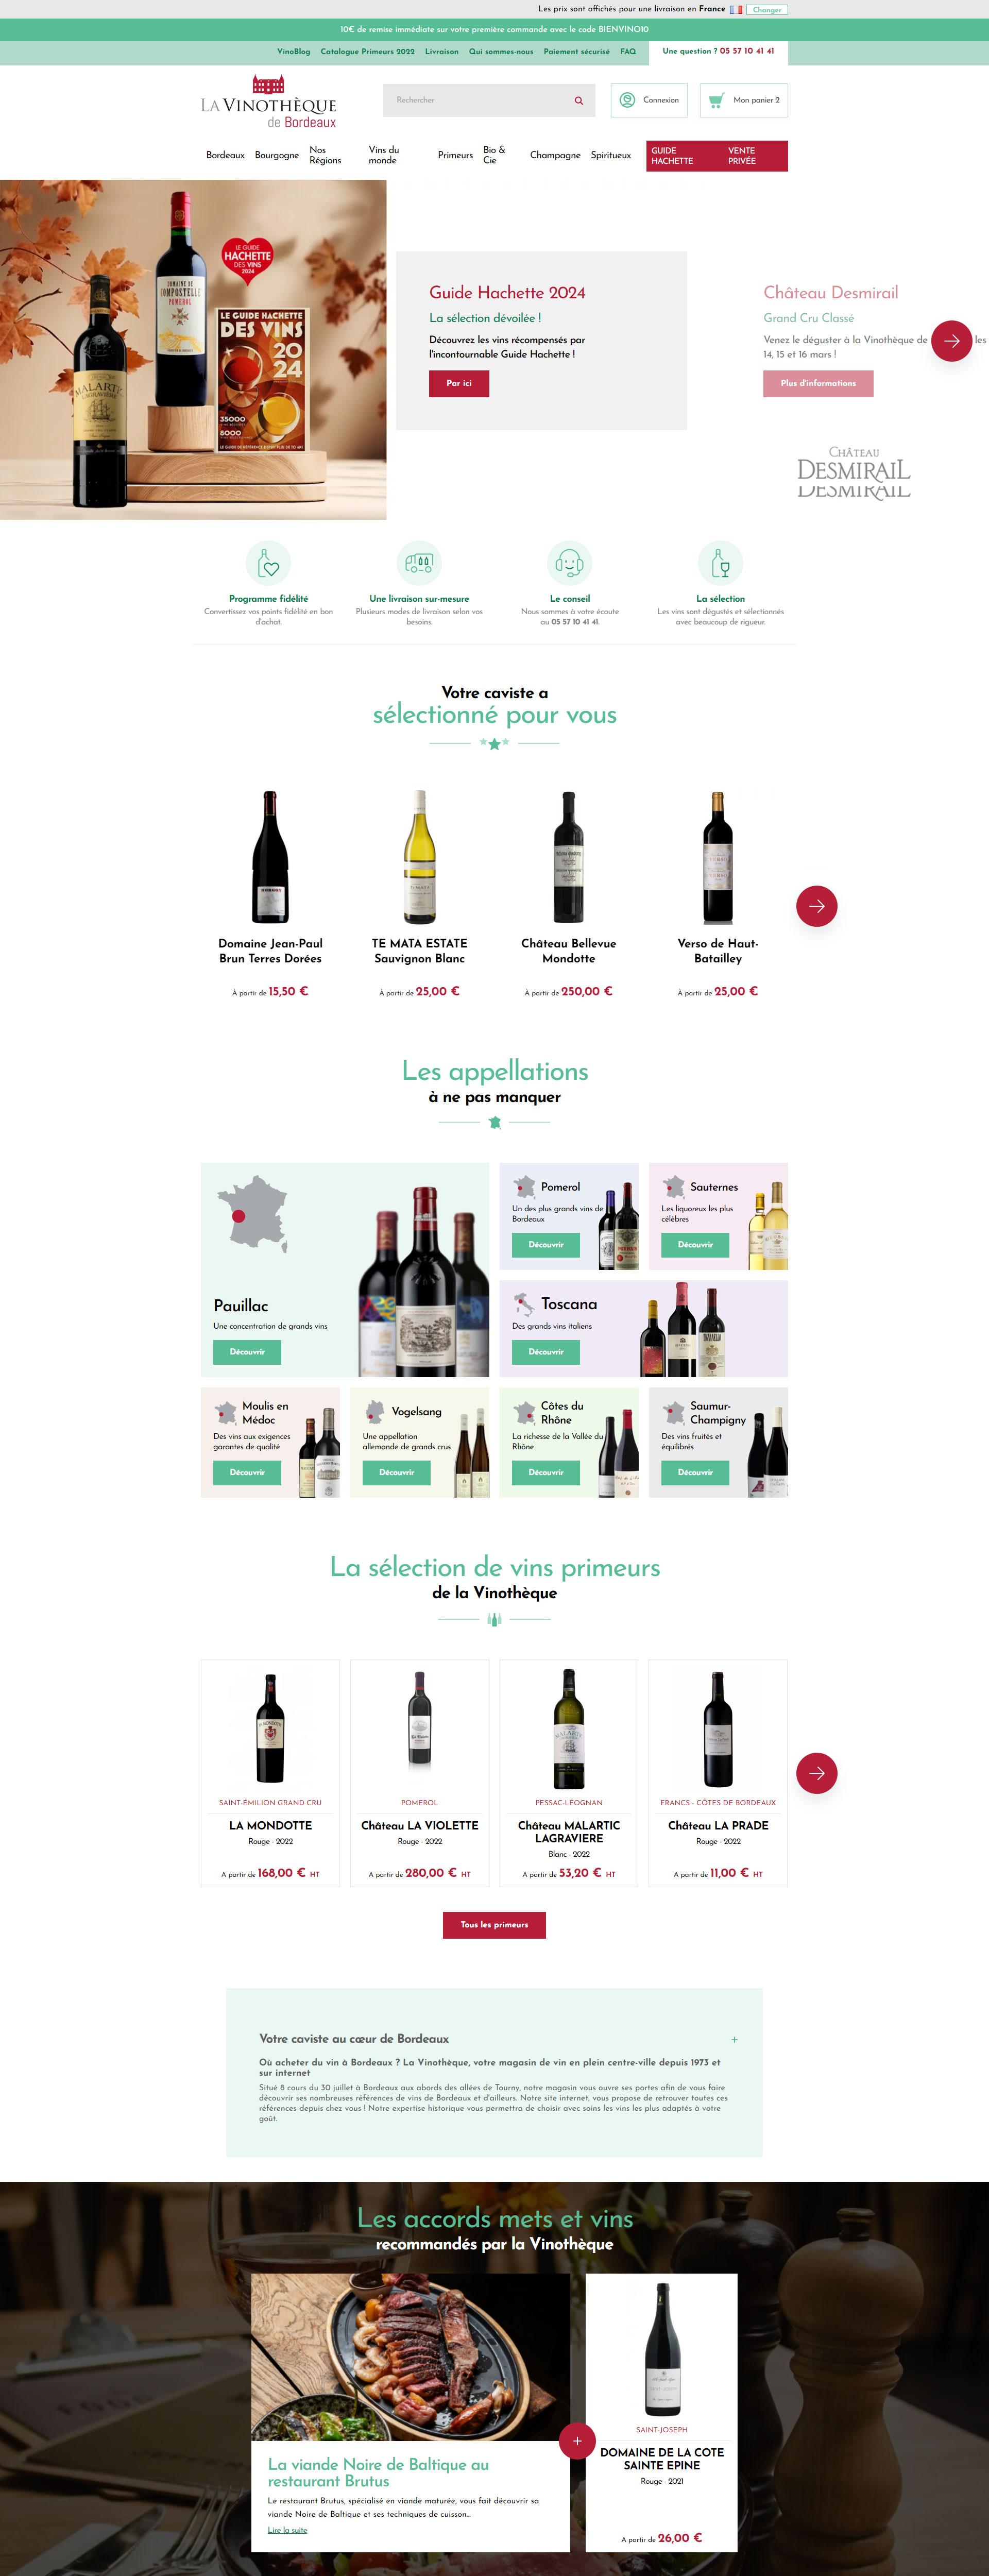 Charte graphique du site https://vinotheque-bordeaux.com/développé par notre agence web Agence web Bordeaux, agence webmarketing et SEO - Natural-net Bordeaux 05 56 17 75 19